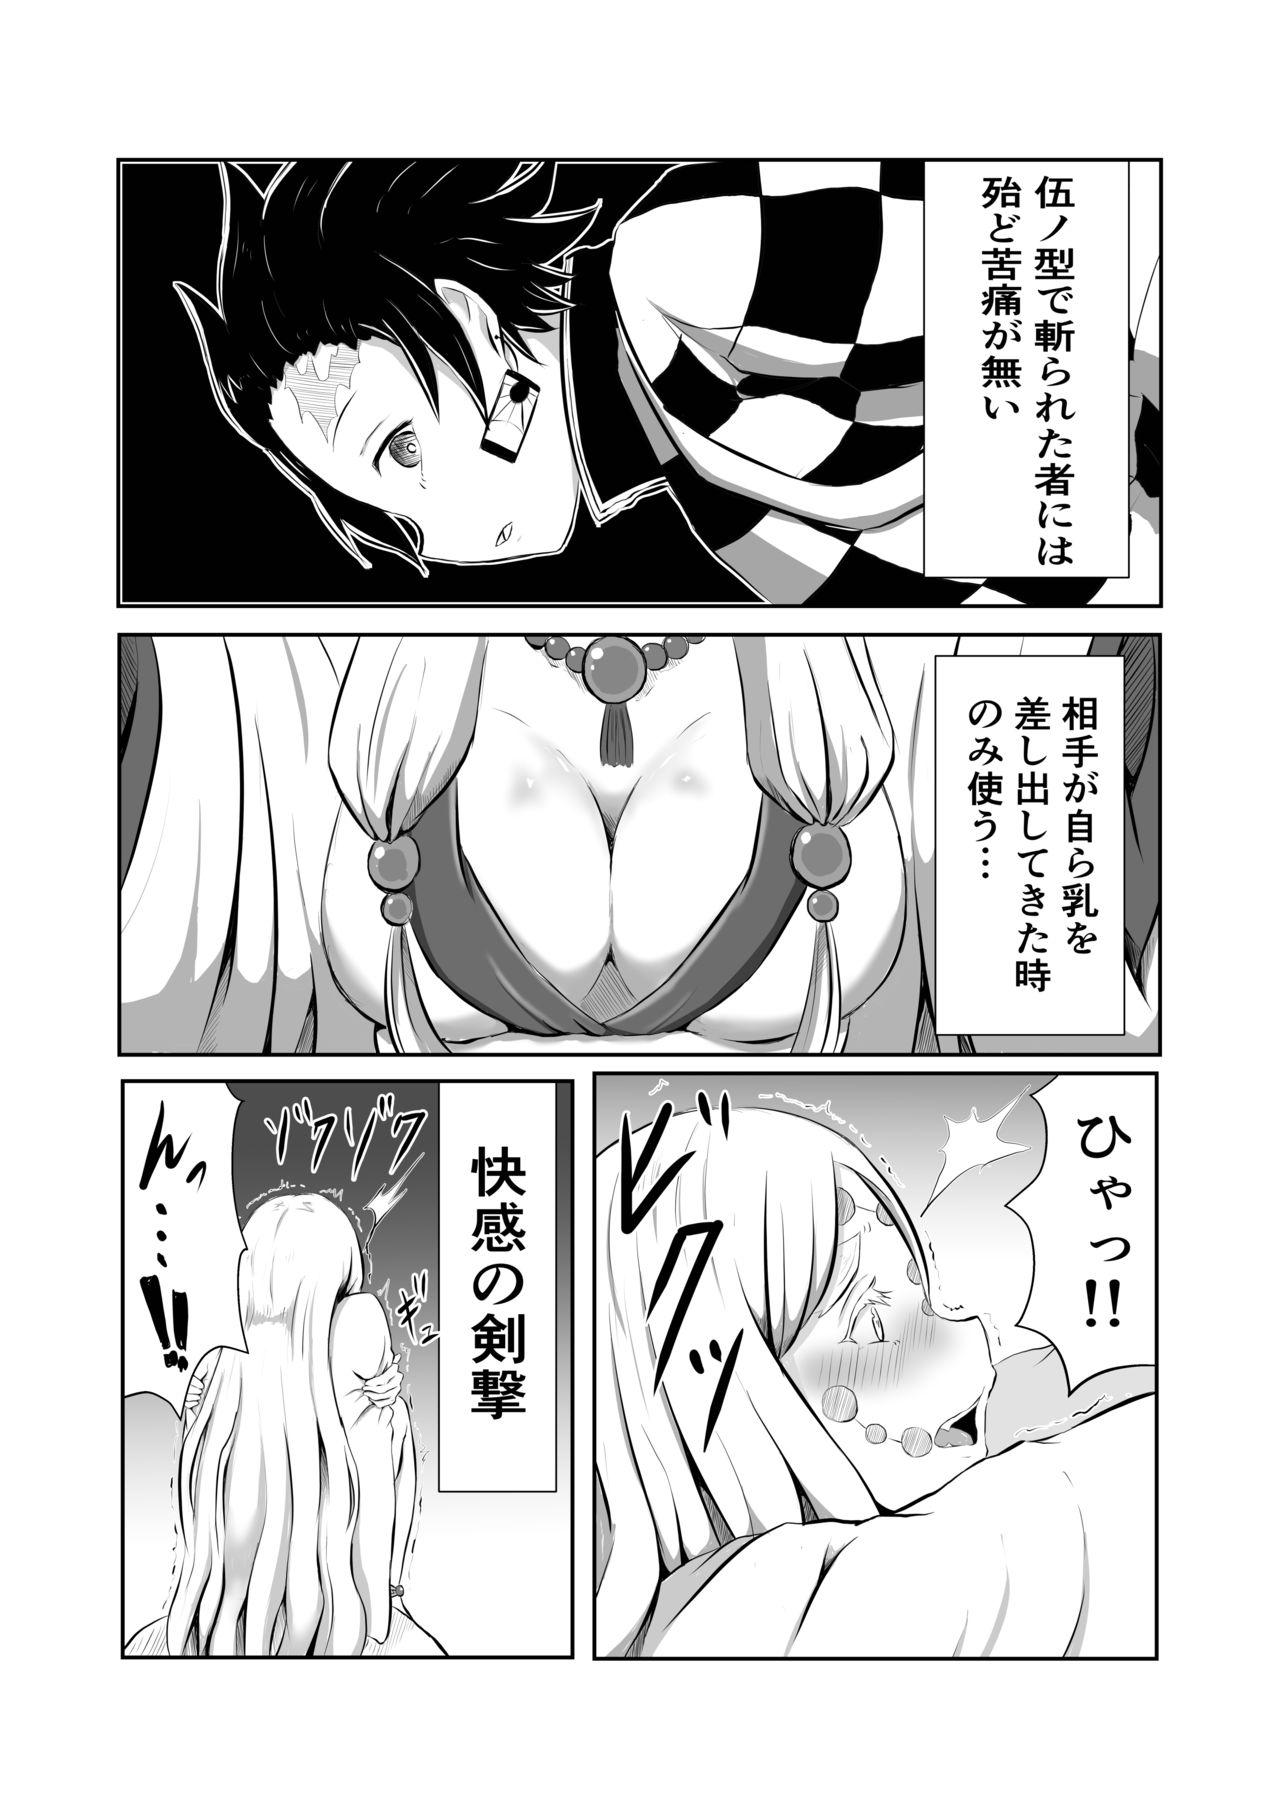 Ftvgirls Hinokami Sex. - Kimetsu no yaiba | demon slayer Small Tits - Page 4